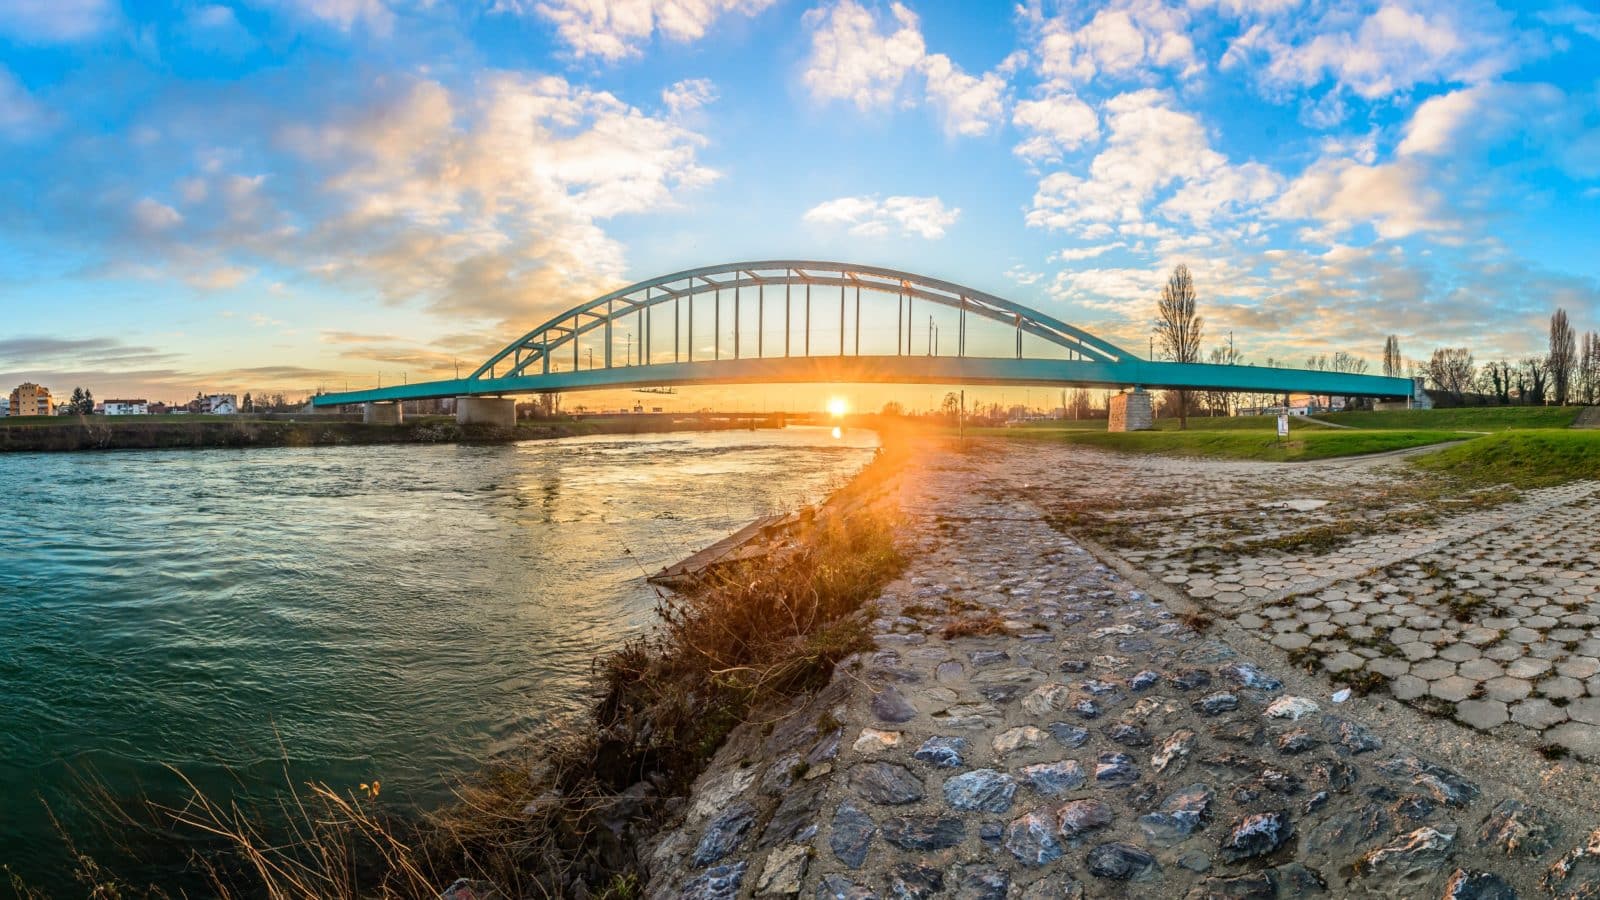 Kada je sagrađen Hendrixov most (Zeleni most) u Zagrebu?